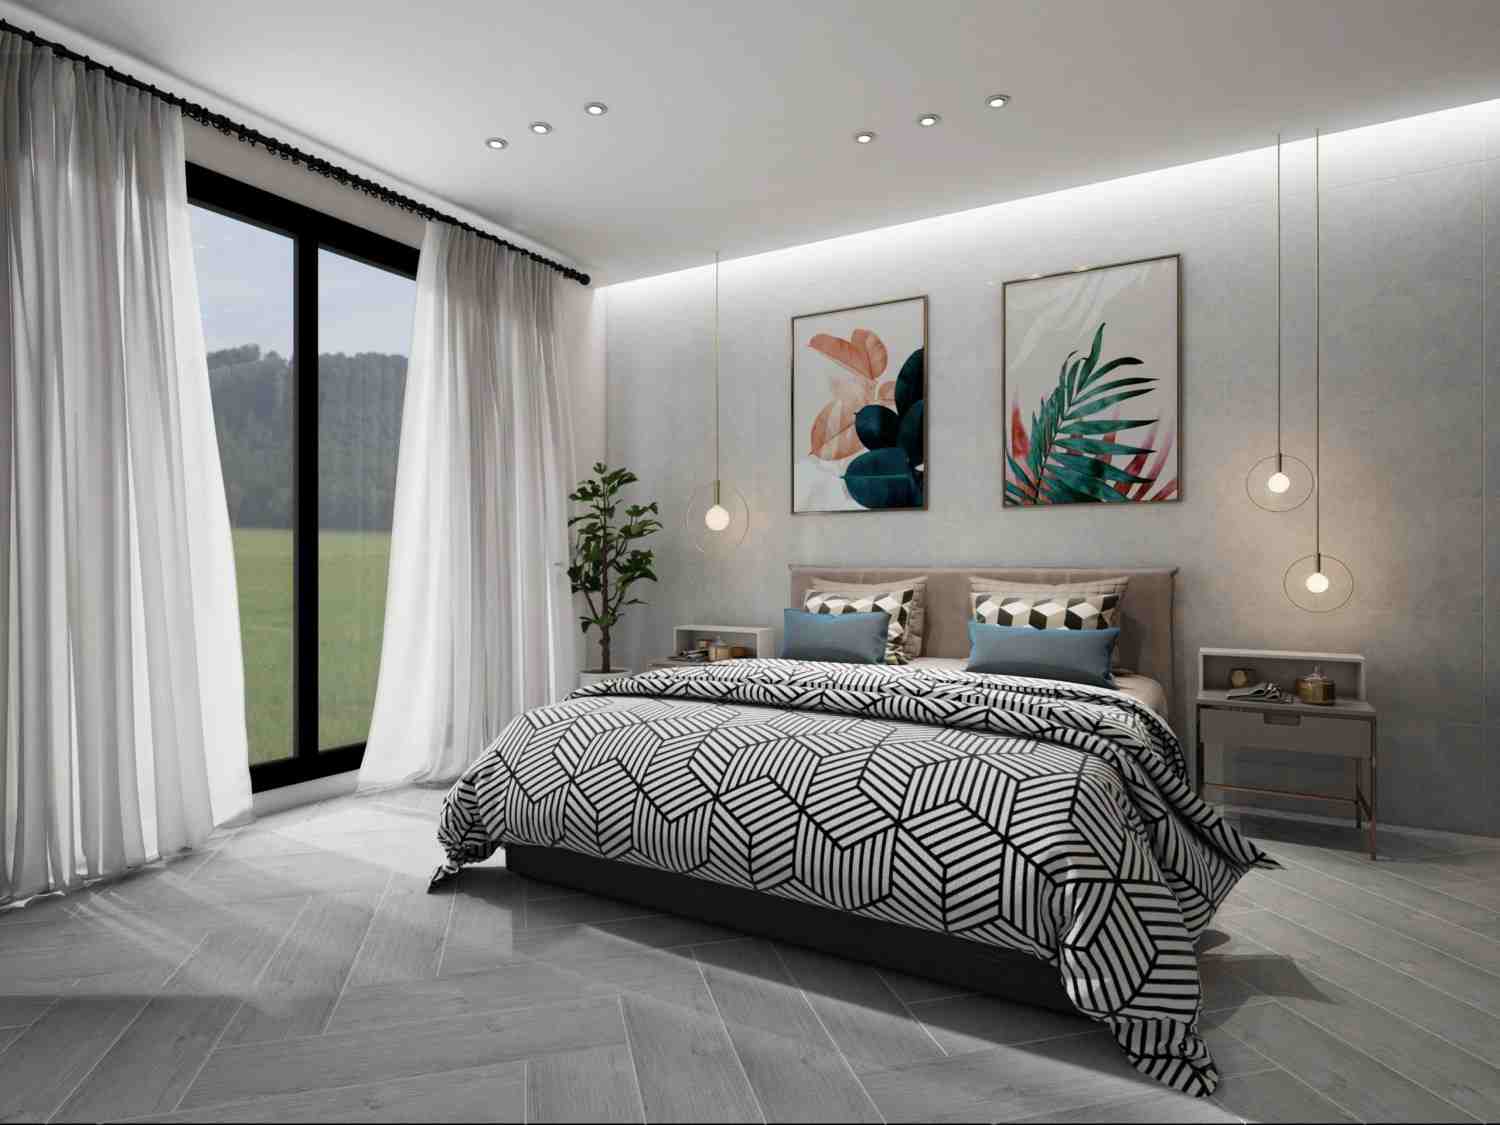 Gia chủ nên kết hợp gạch lát màu trung tính để không gian phòng ngủ mang cảm giác thư thái và dễ chịu